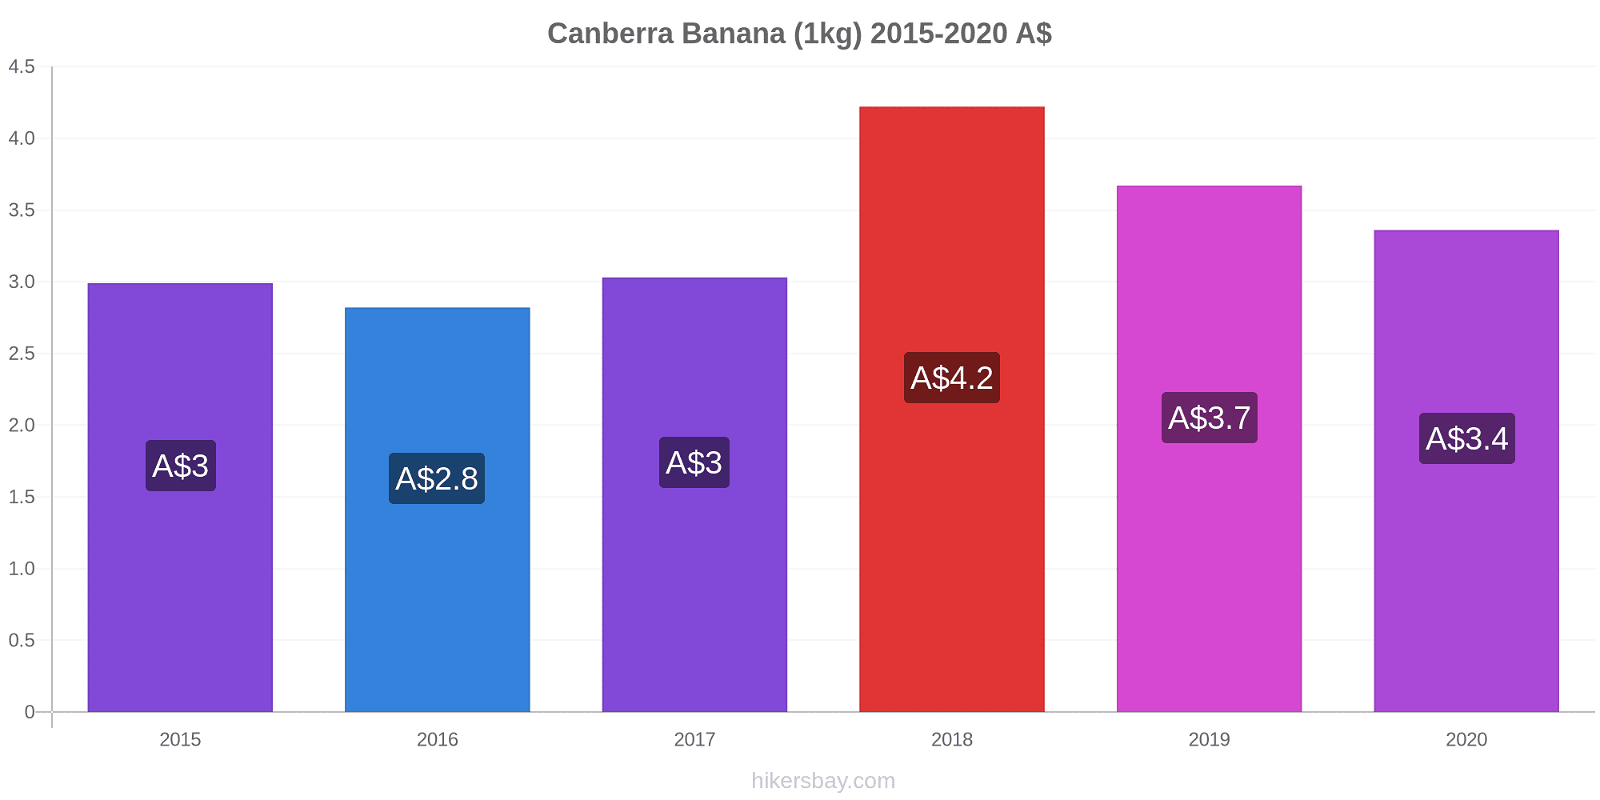 Canberra modificări de preț Banana (1kg) hikersbay.com